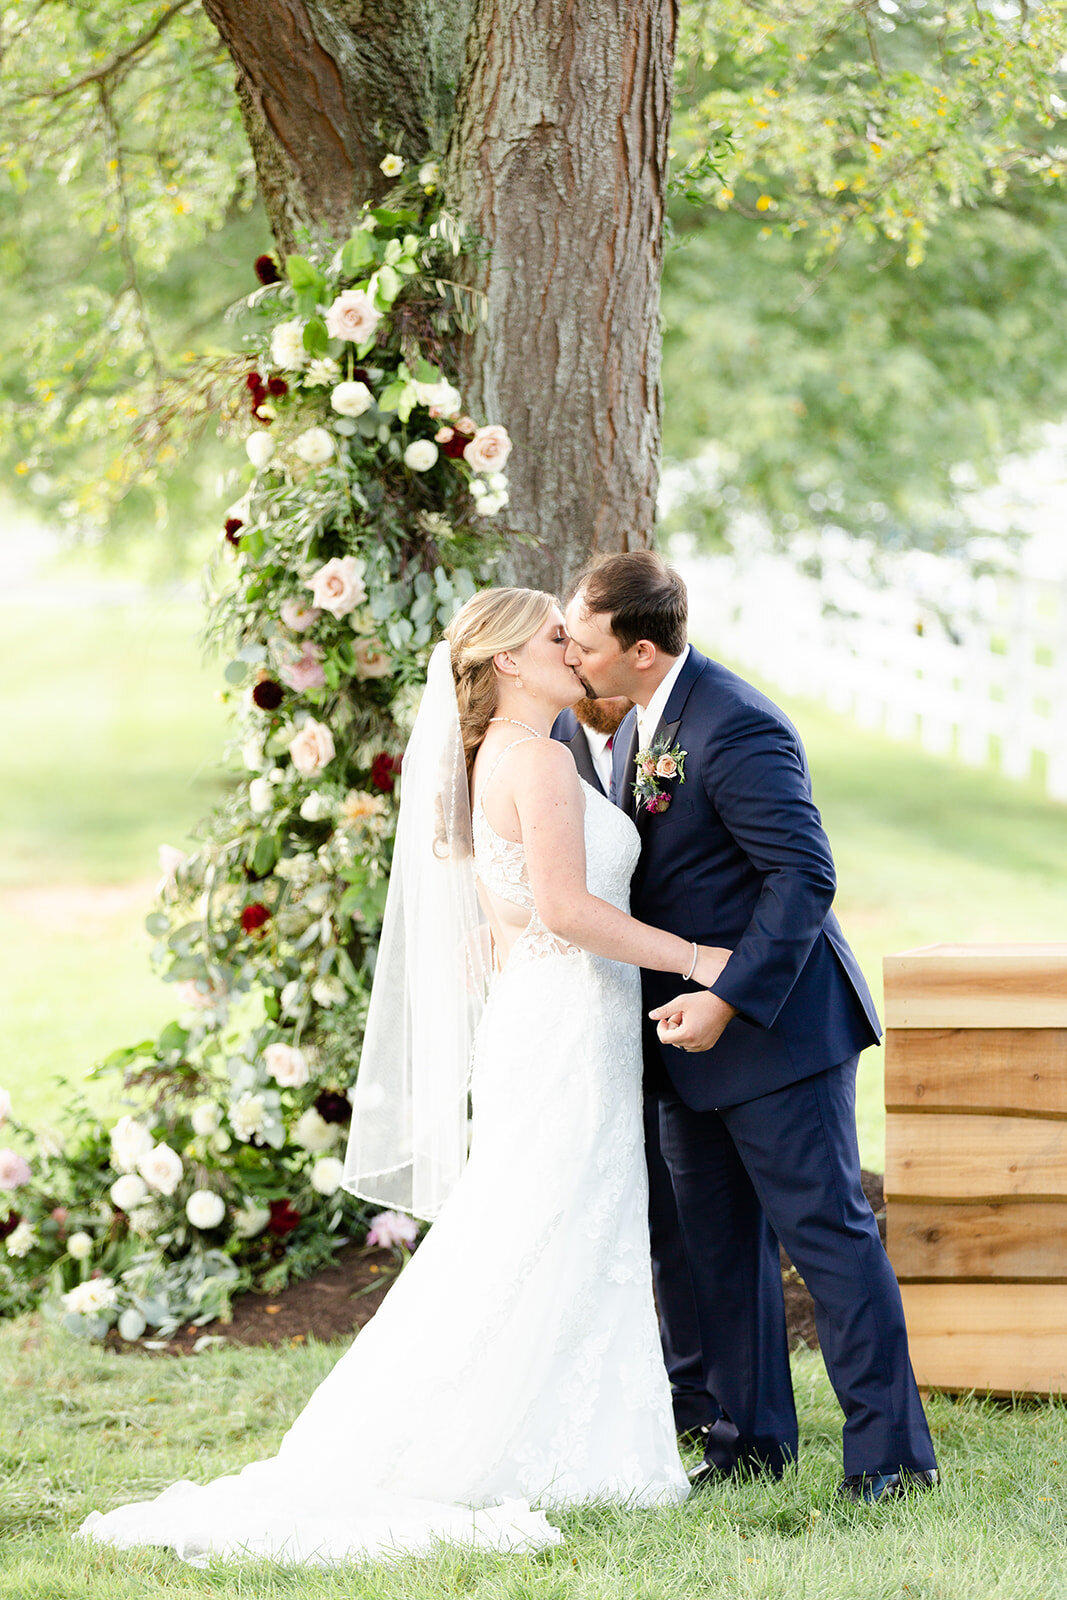 Wedding-photographer-Ohio-Wedding-Photographer- Massillon-Ohio-Photographer-The-cannons-Photography-104